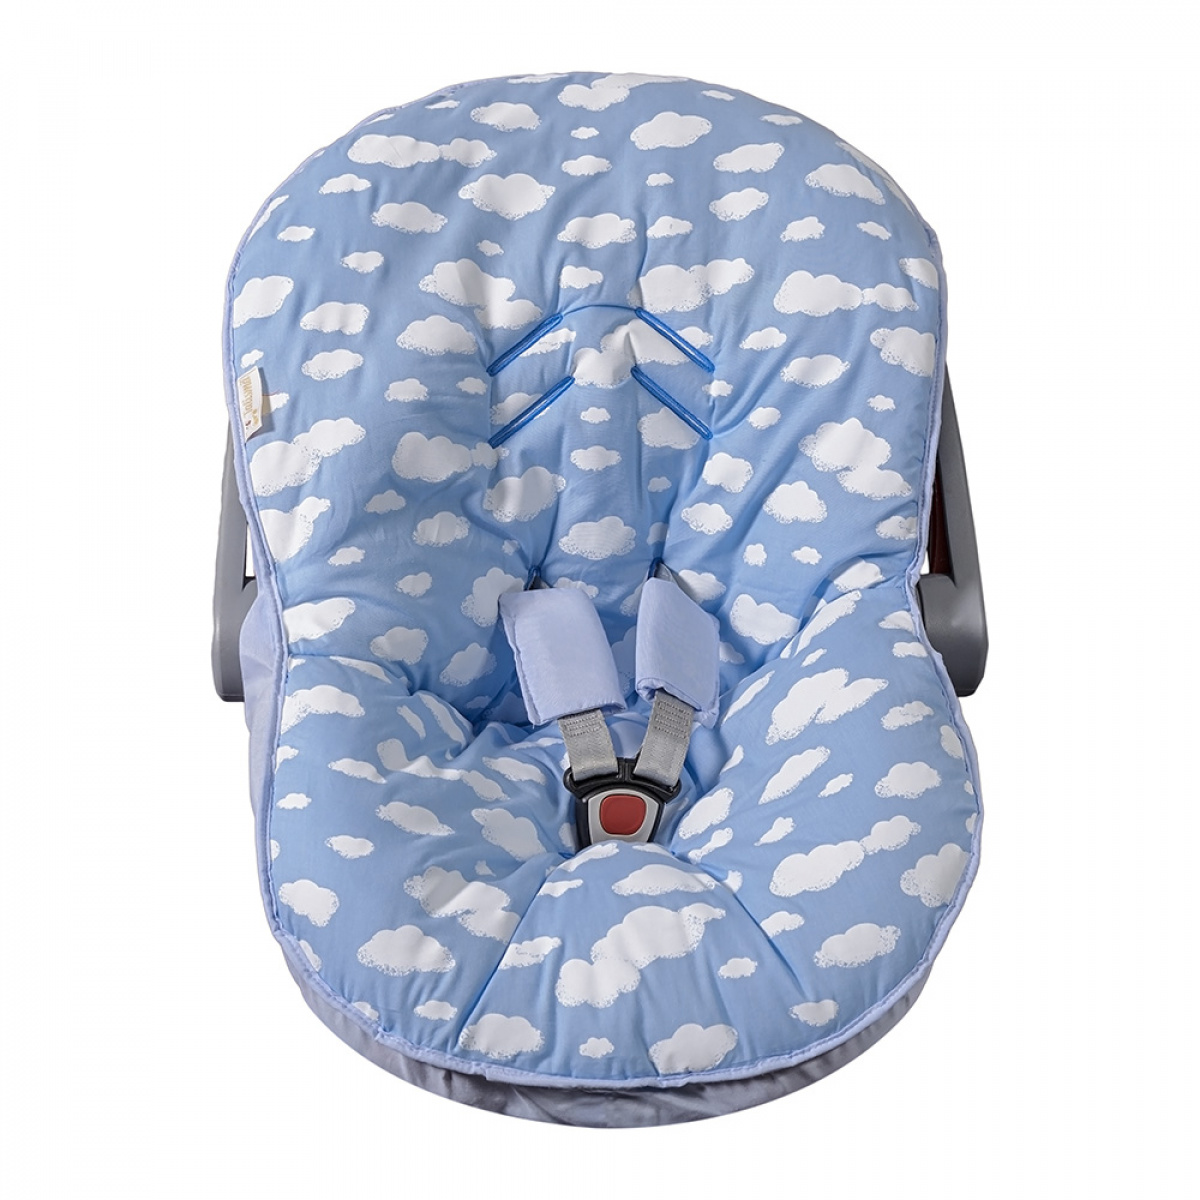 Capa de Bebe Conforto - Nuvem Azul